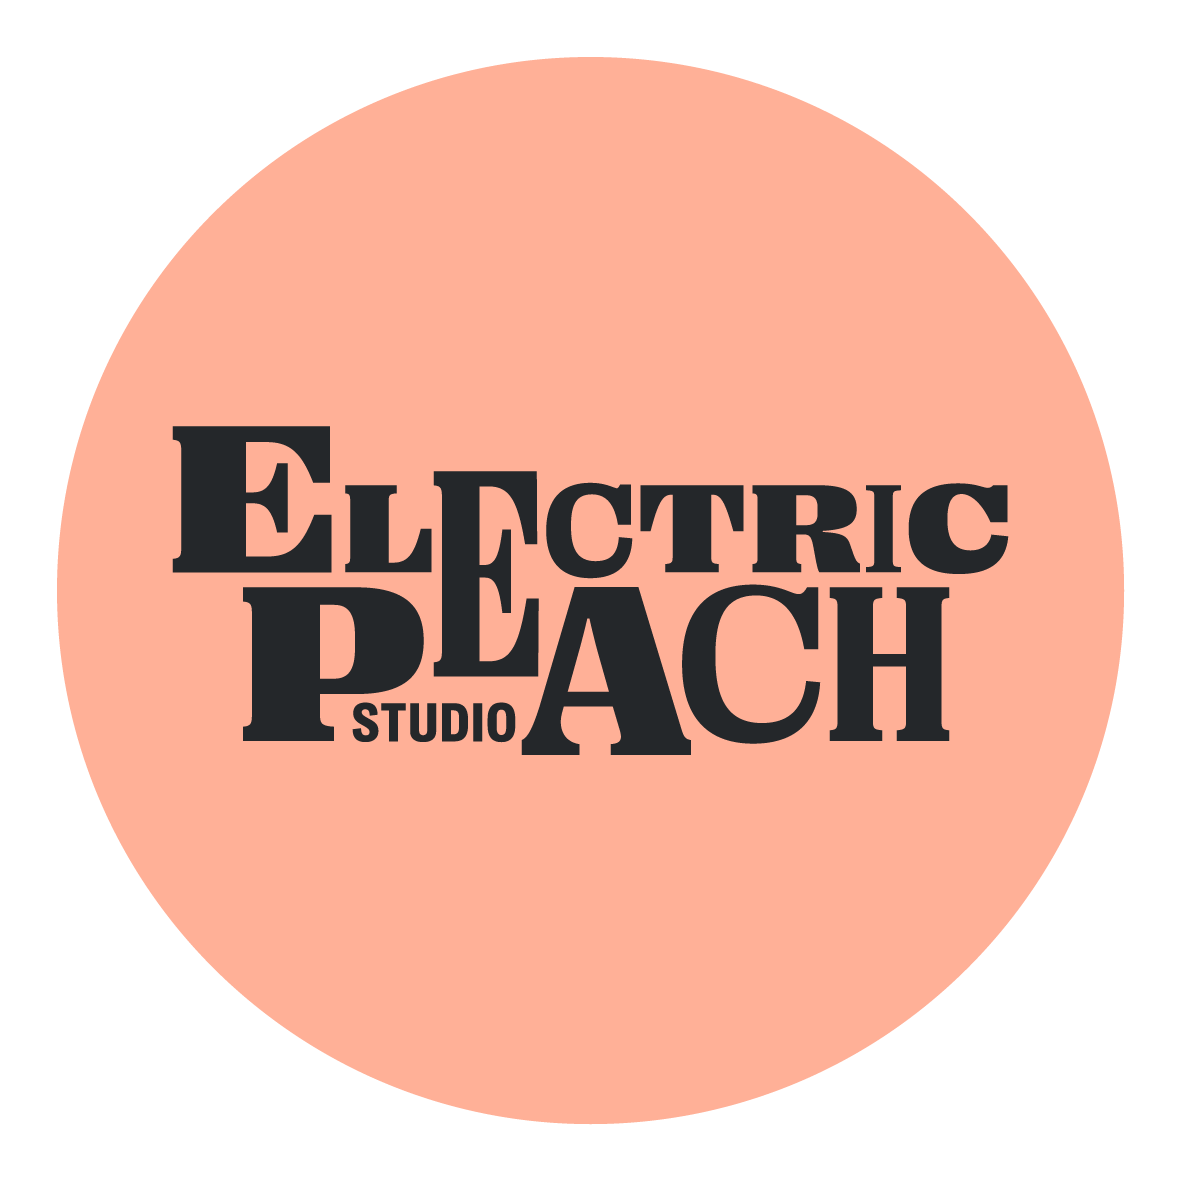 Electric Peach Ltd